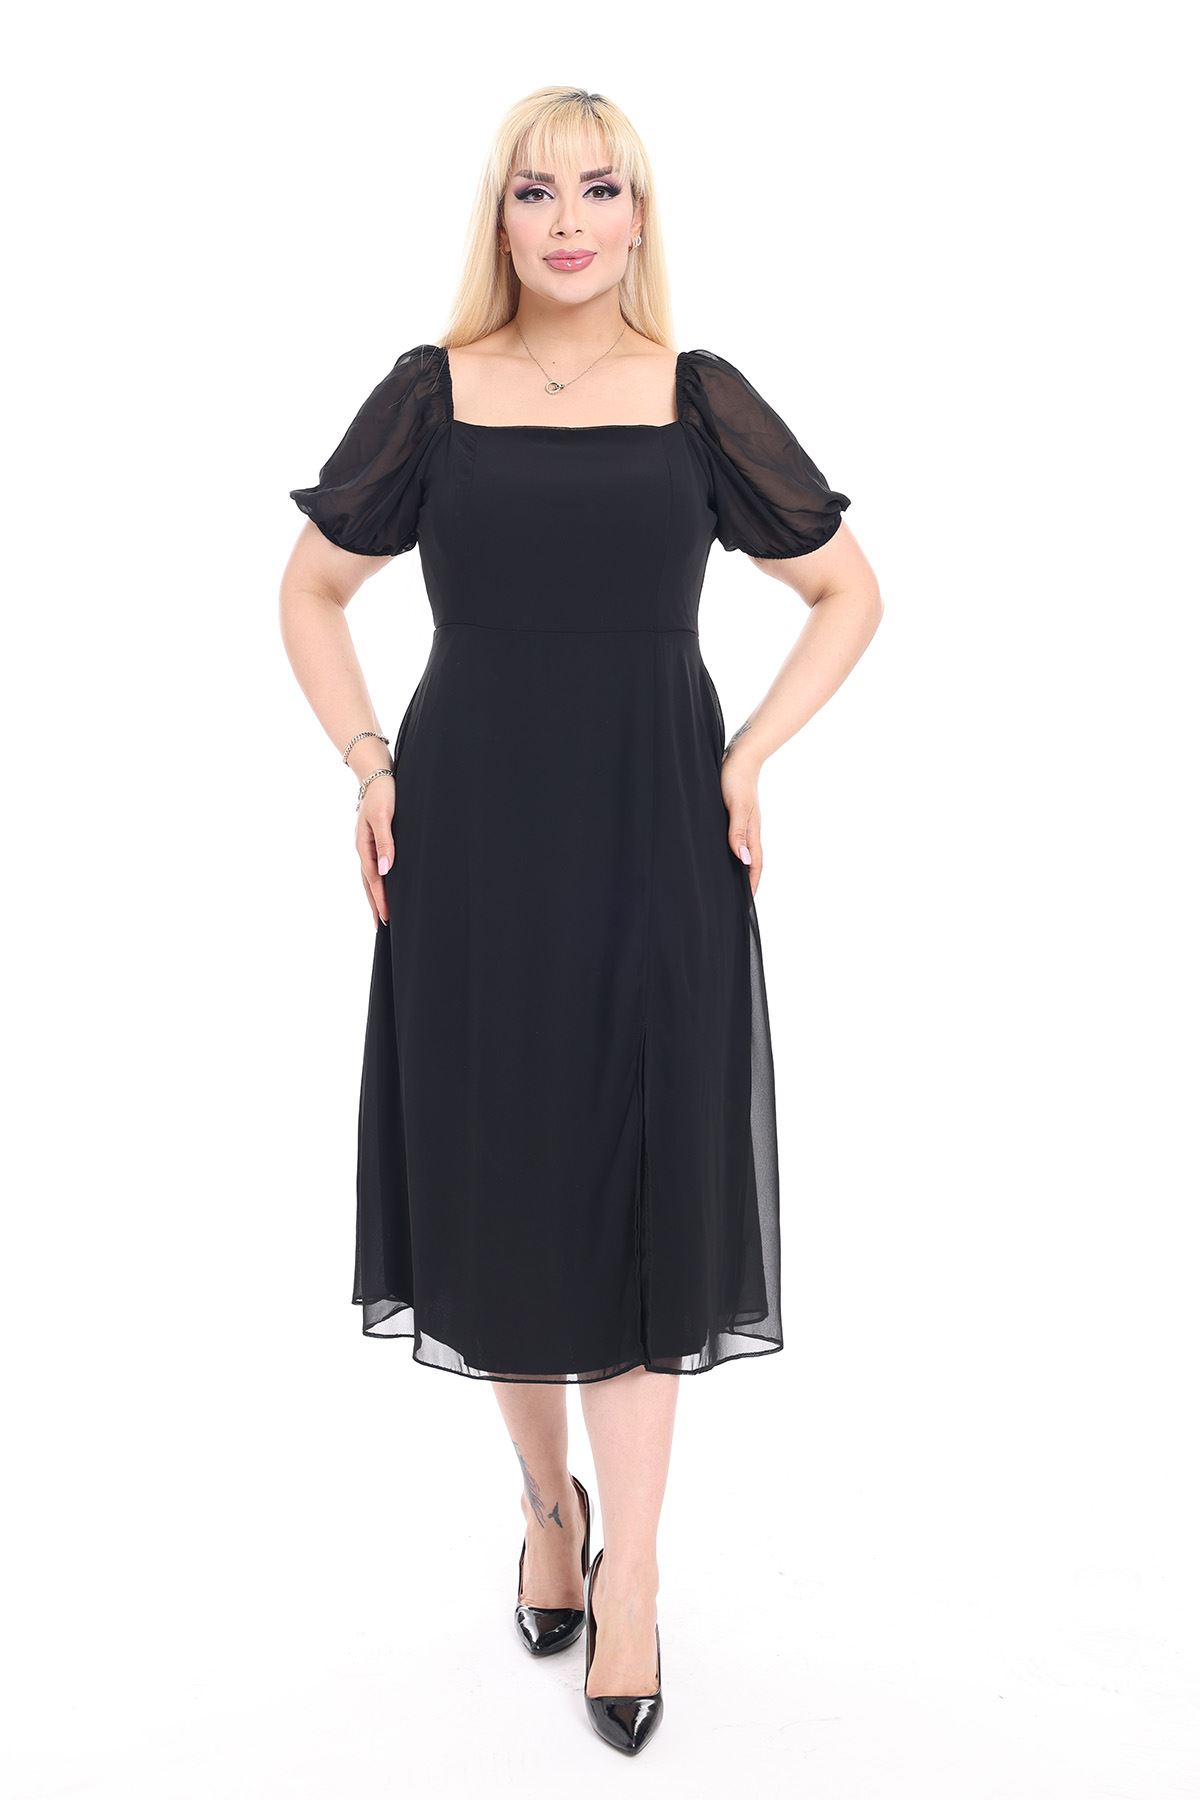 Kadın Büyük Beden Siyah Şifon Yırtmaçlı Yazlık Elbise 12K-2153